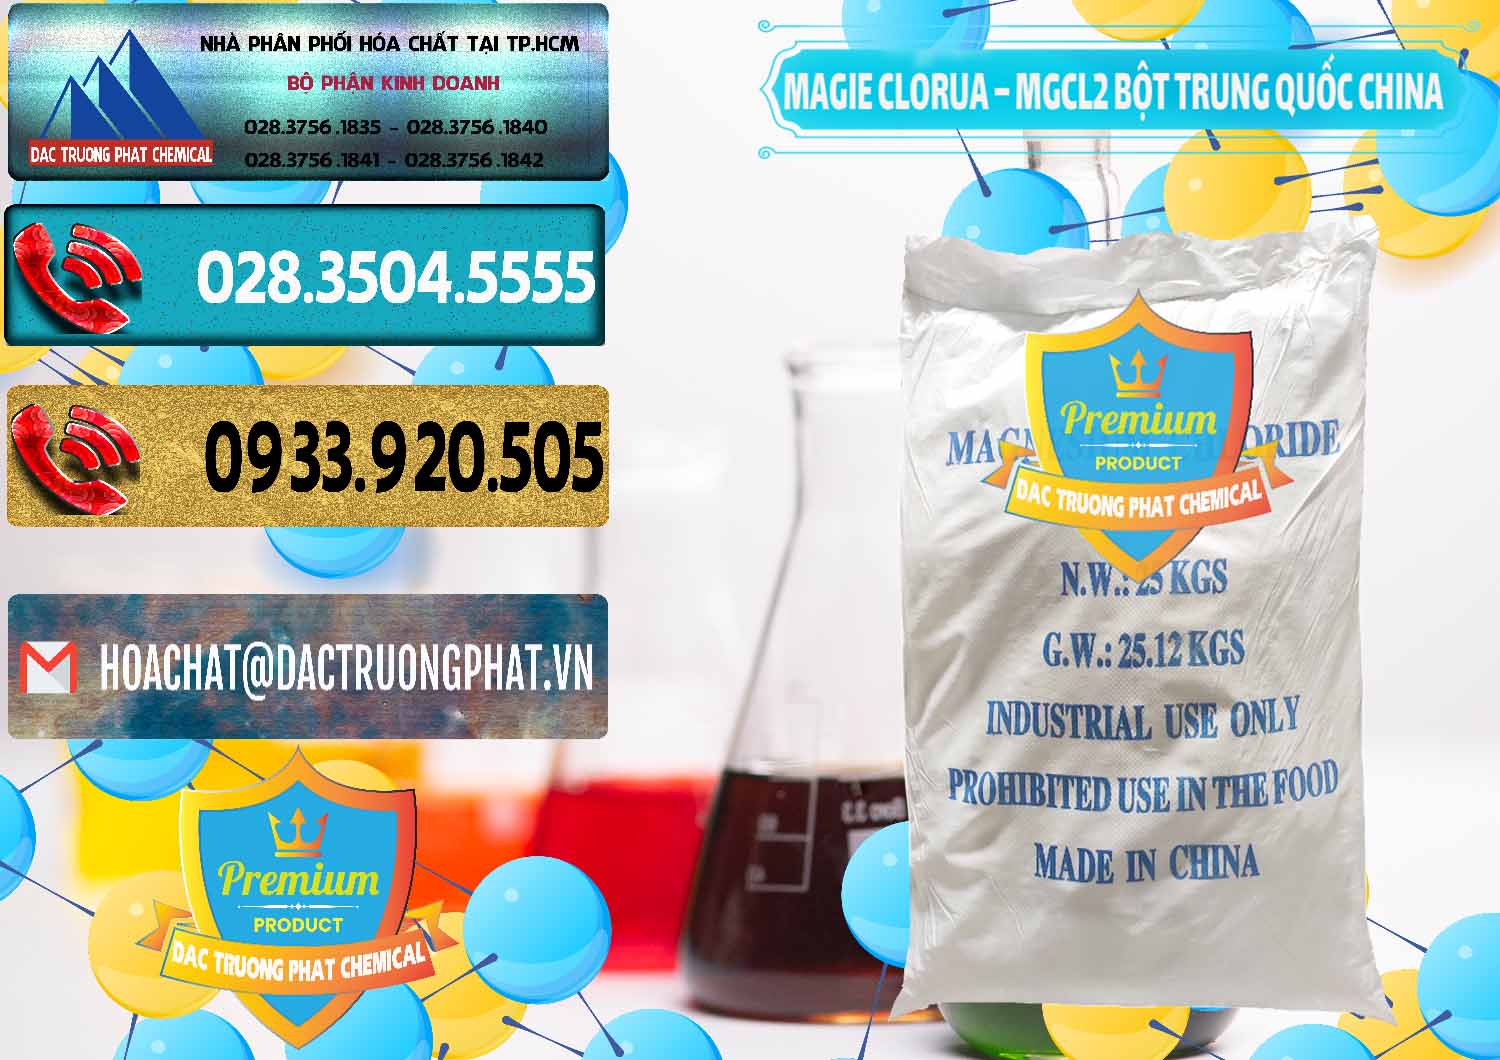 Cty cung ứng ( bán ) Magie Clorua – MGCL2 96% Dạng Bột Bao Chữ Xanh Trung Quốc China - 0207 - Nơi nhập khẩu _ cung cấp hóa chất tại TP.HCM - hoachatdetnhuom.com